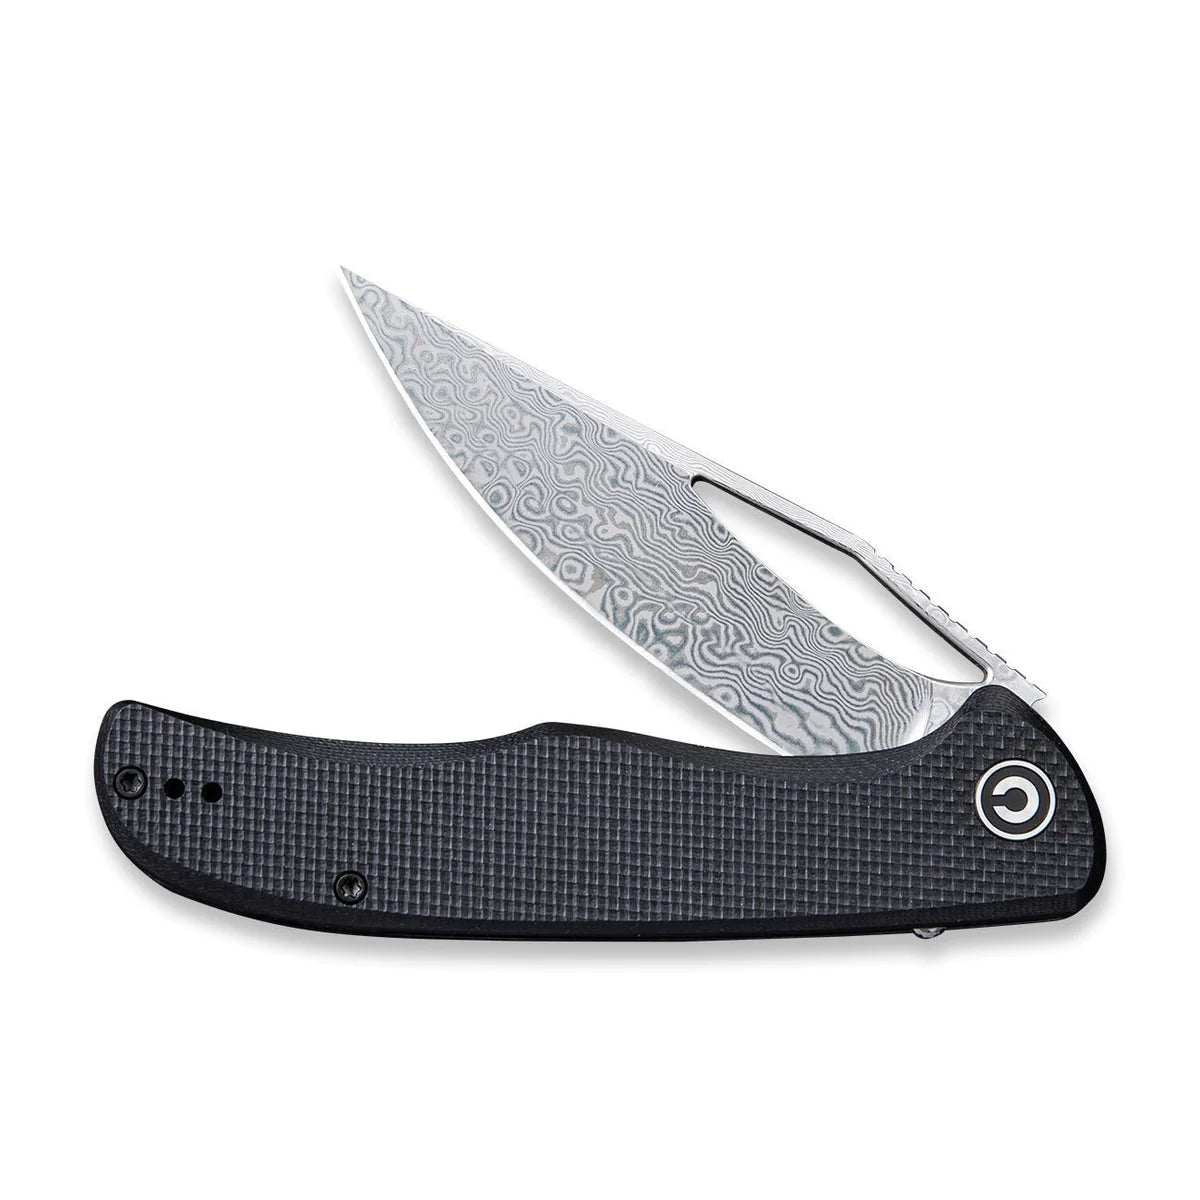 Civivi 912DS Shredder Flipper Folding Knife – Damascus Blade w/ Black G10 Handle | Civivi Knives